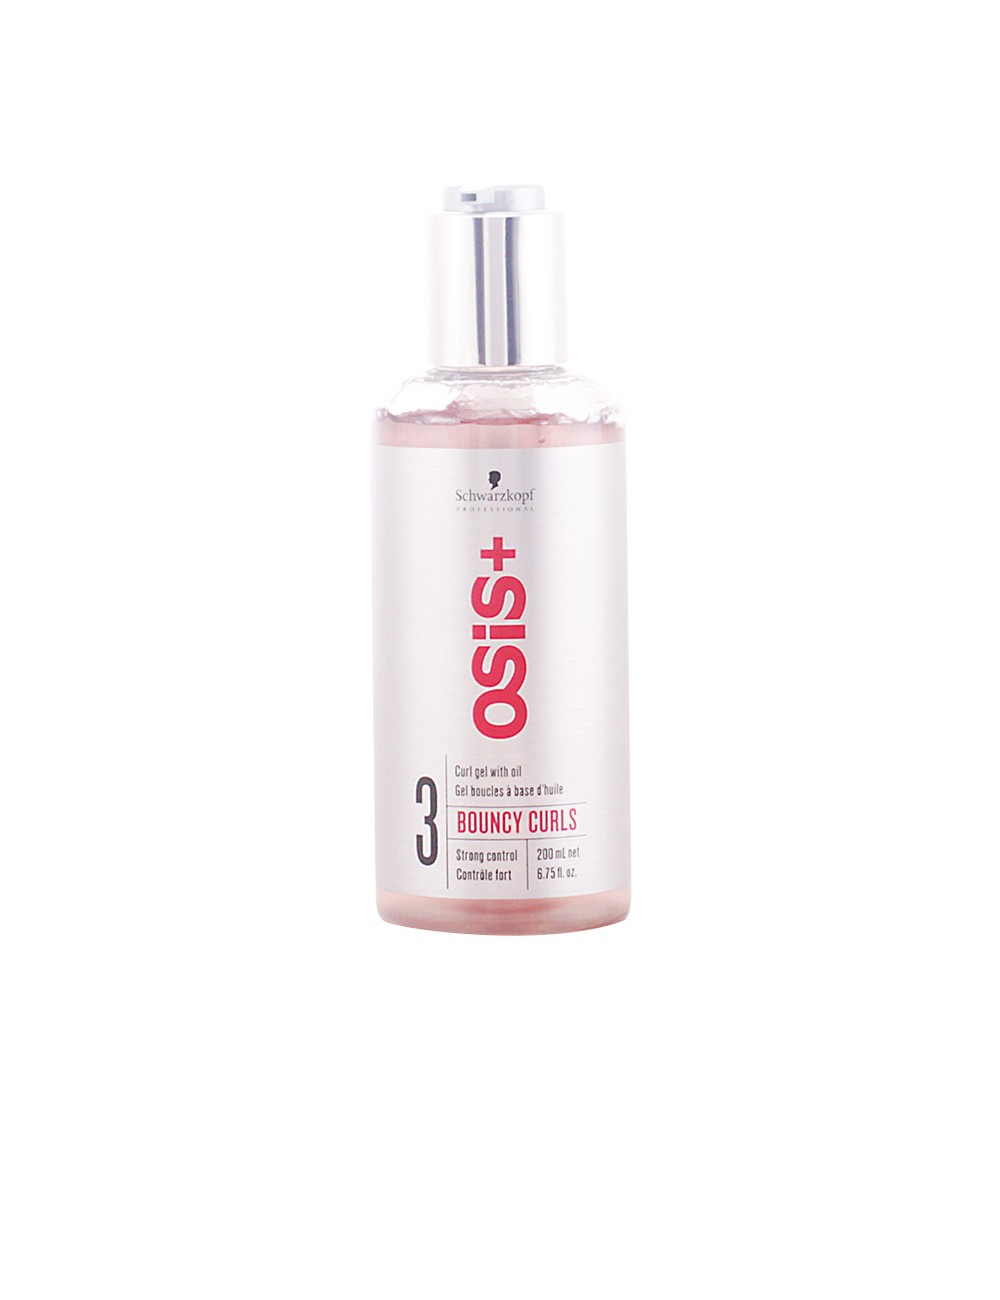 OSIS bouncy curls gel with oil 200 ml